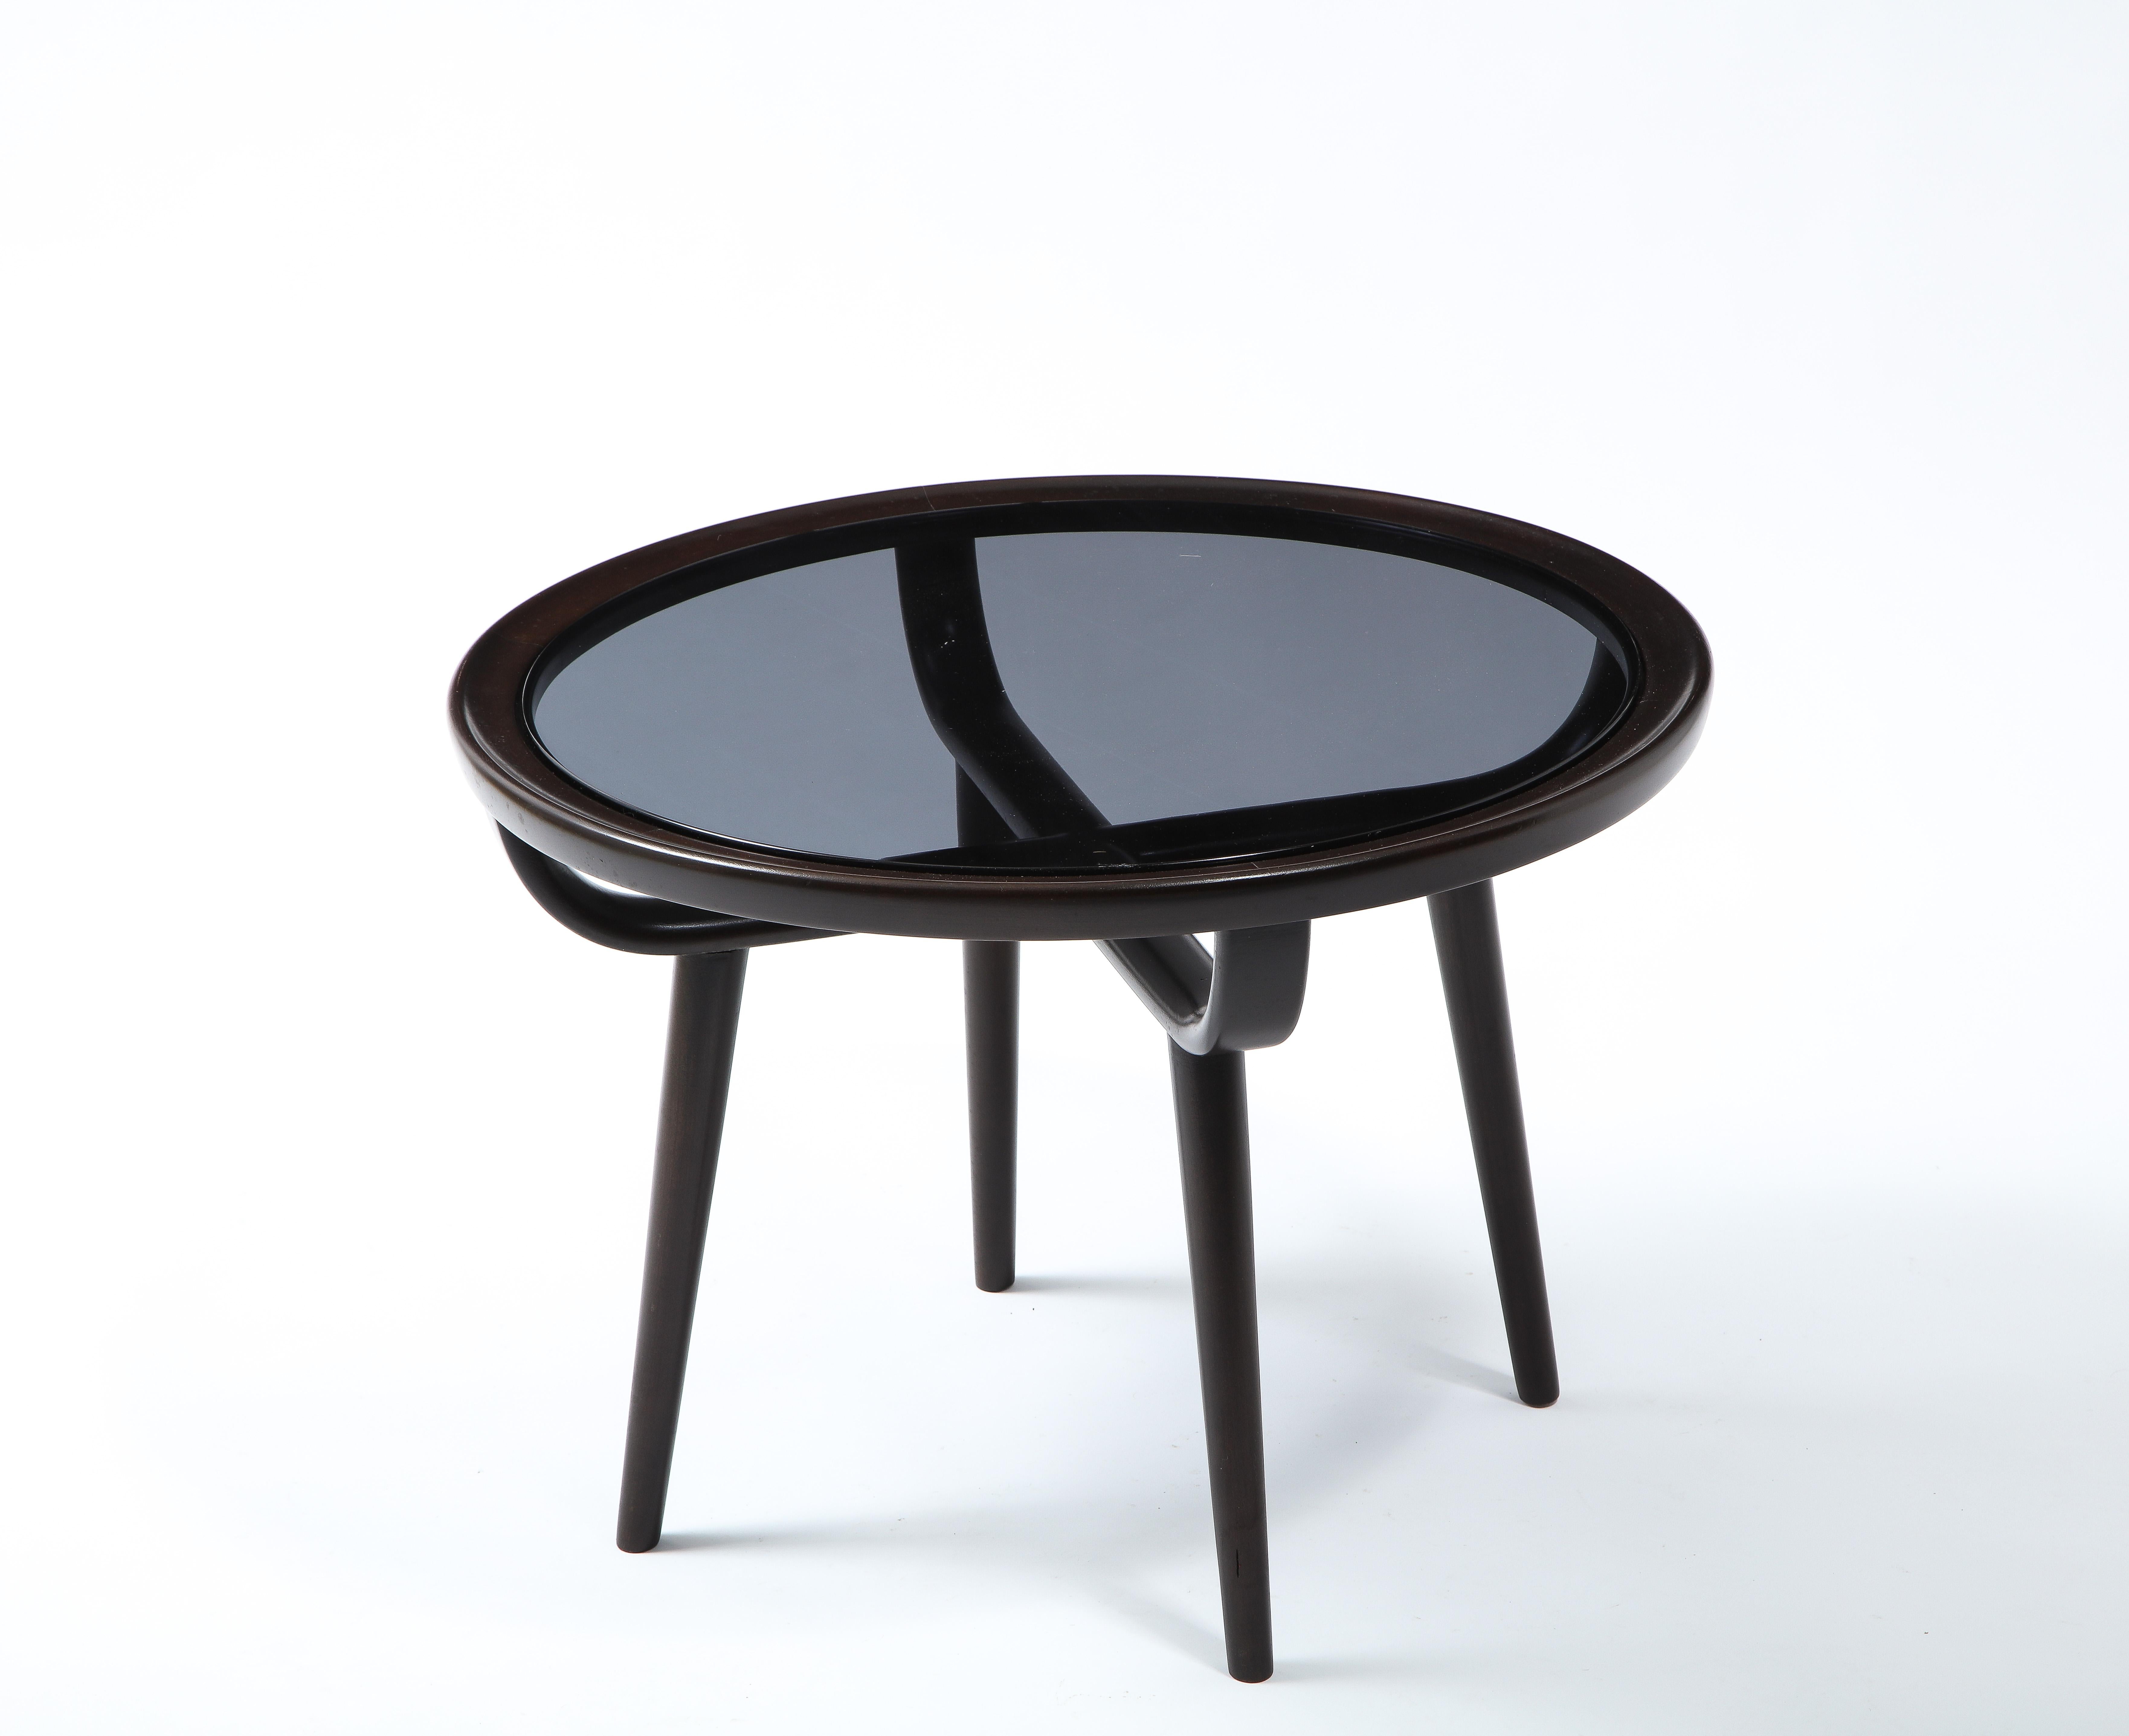 Carlo di Carli Small Dark Walnut & Glass Round Coffee Table, Italy 1960's For Sale 2